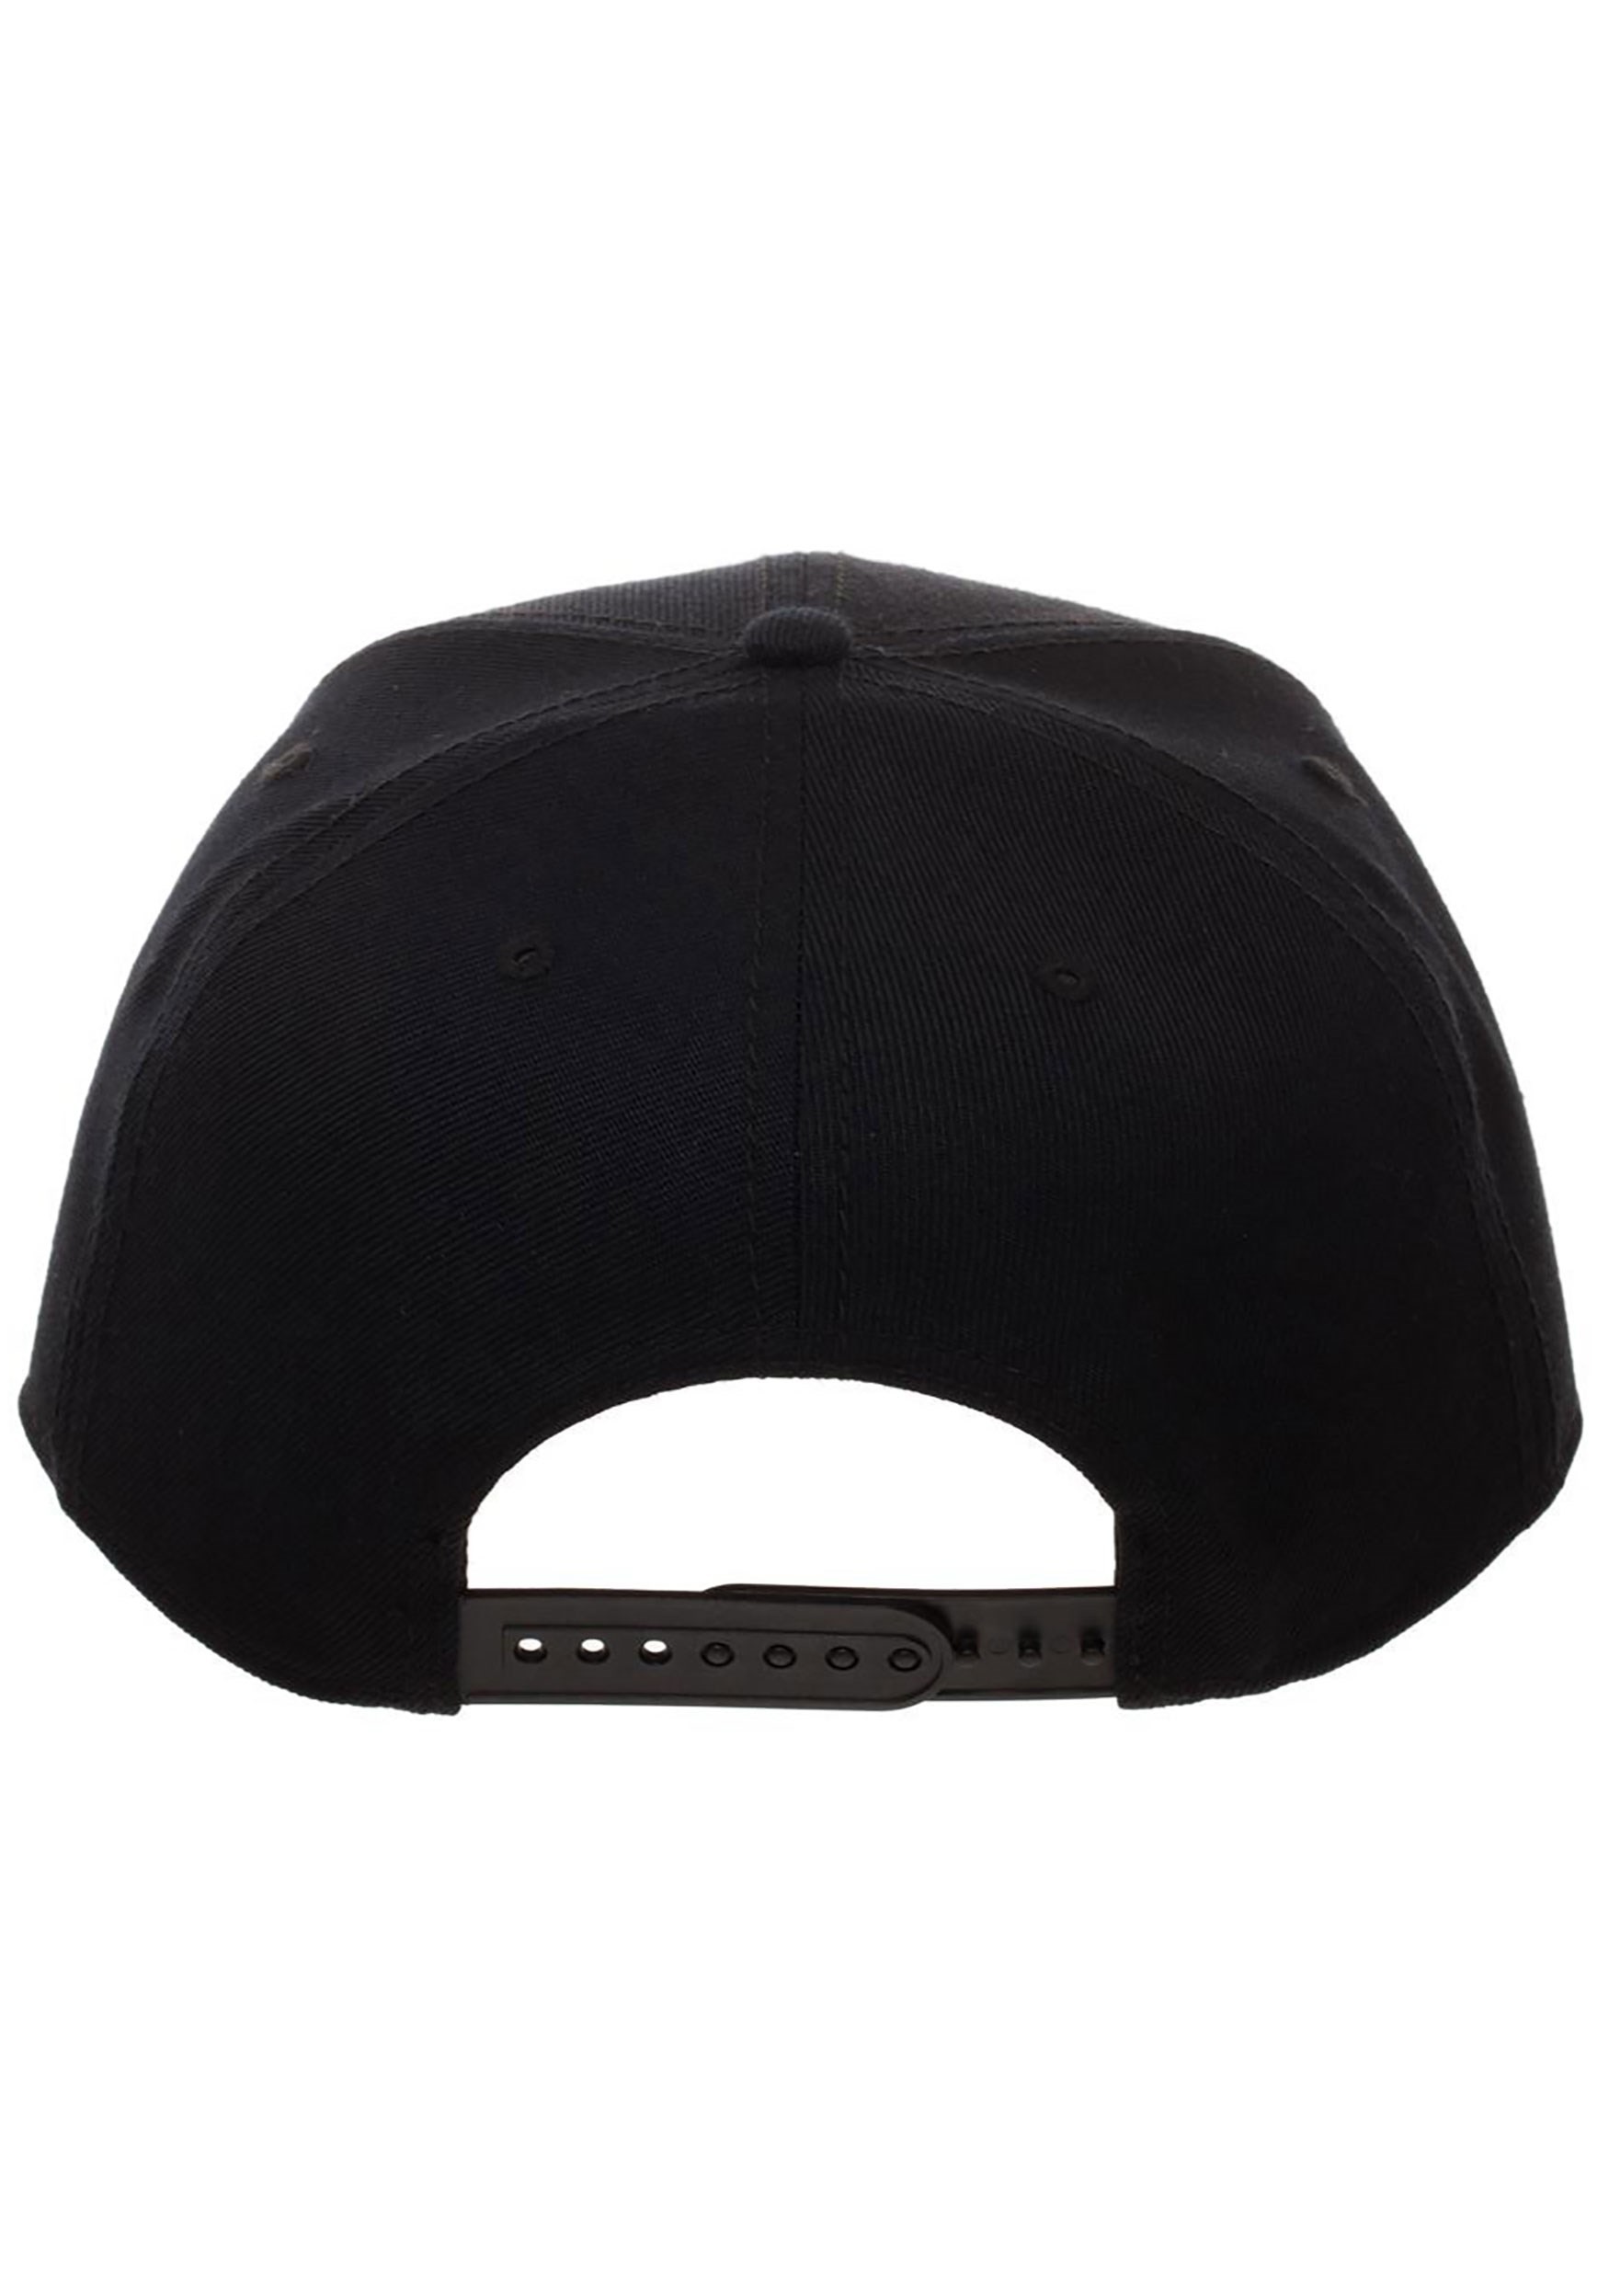 Beetlejuice Black Snapback Hat , Adult Snapback Hats